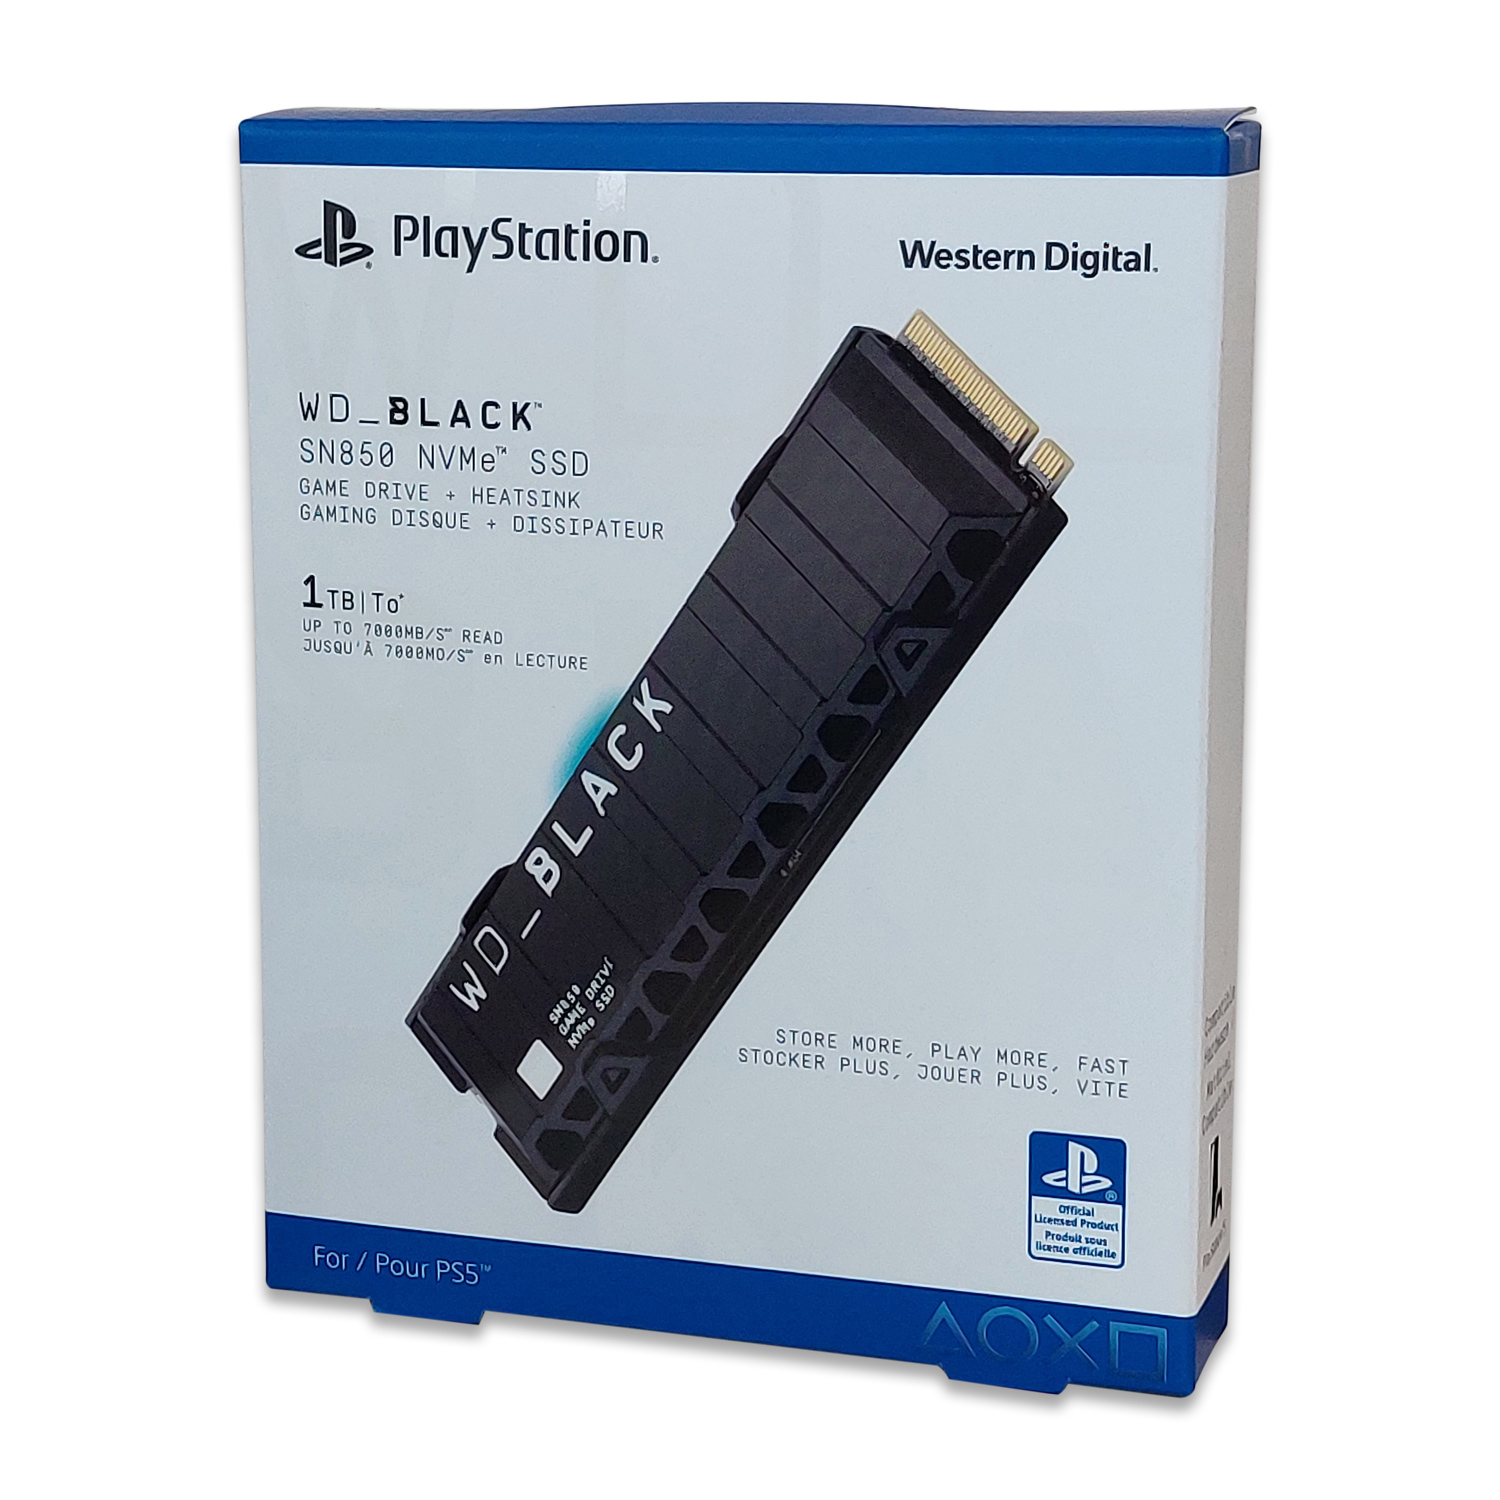 WD_BLACK SN850 1 TB NVMe SSD Offiziell Lizenziert für PS5 Konsolen von Western Digital